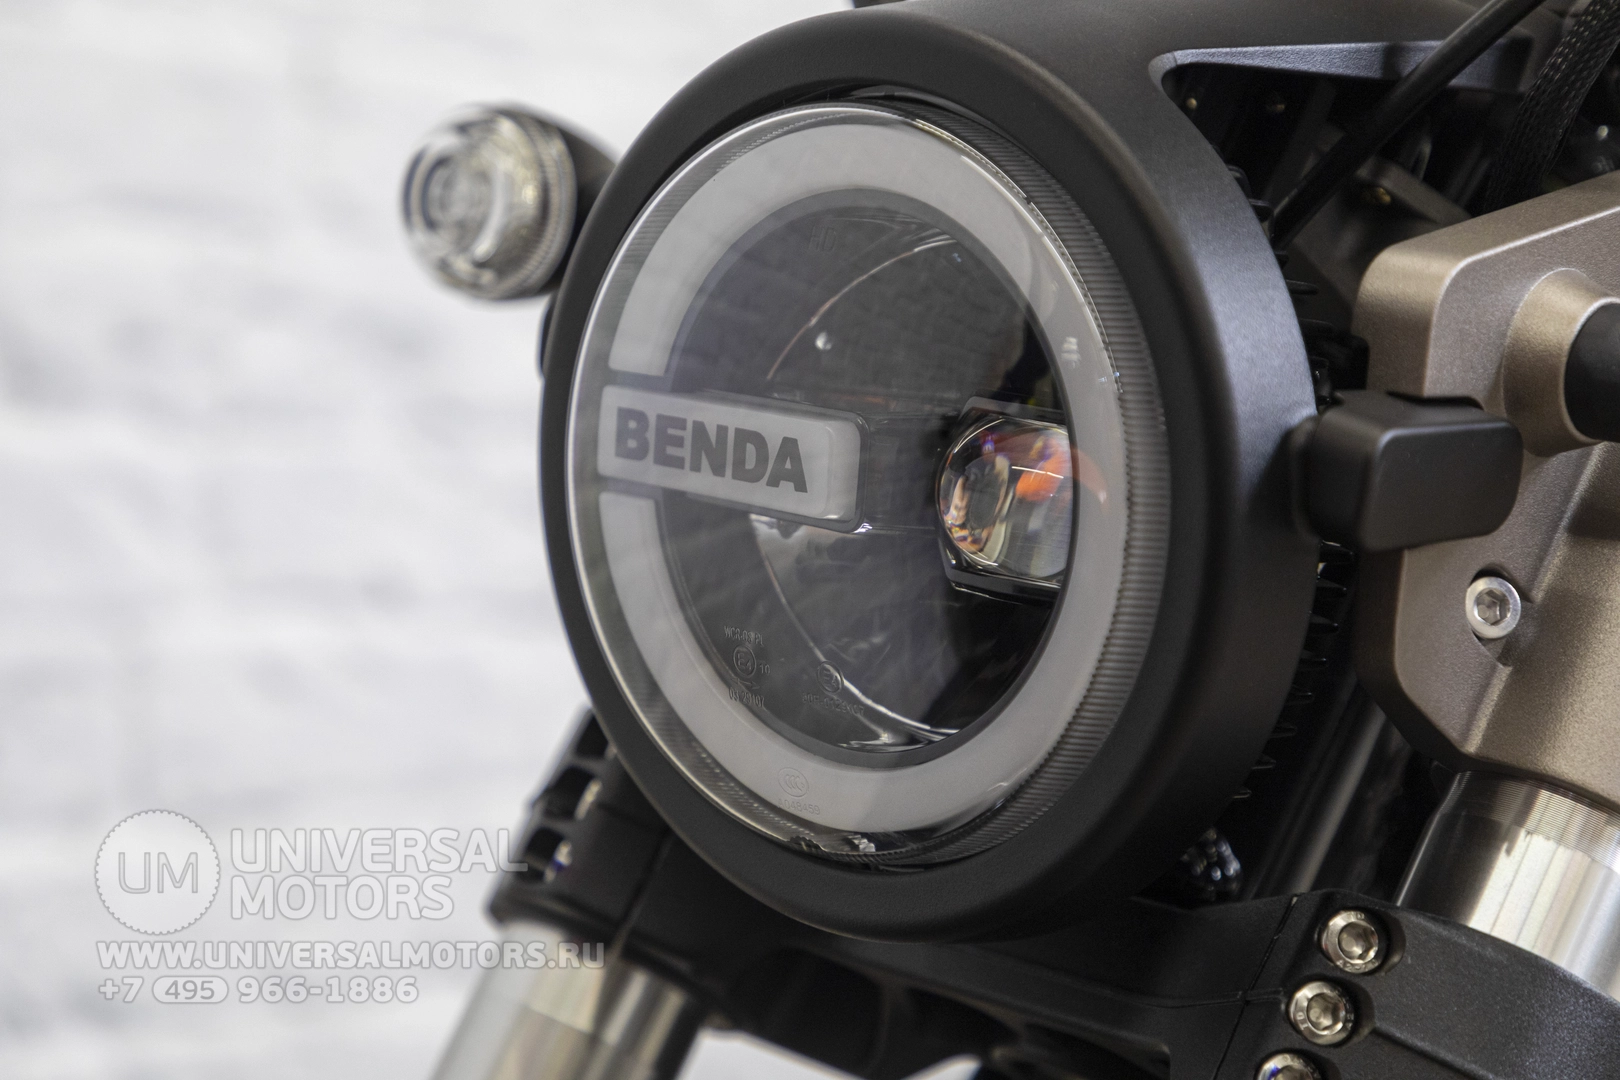 Мотоцикл Benda Rock 300, Максимальная скорость 150 км/ч